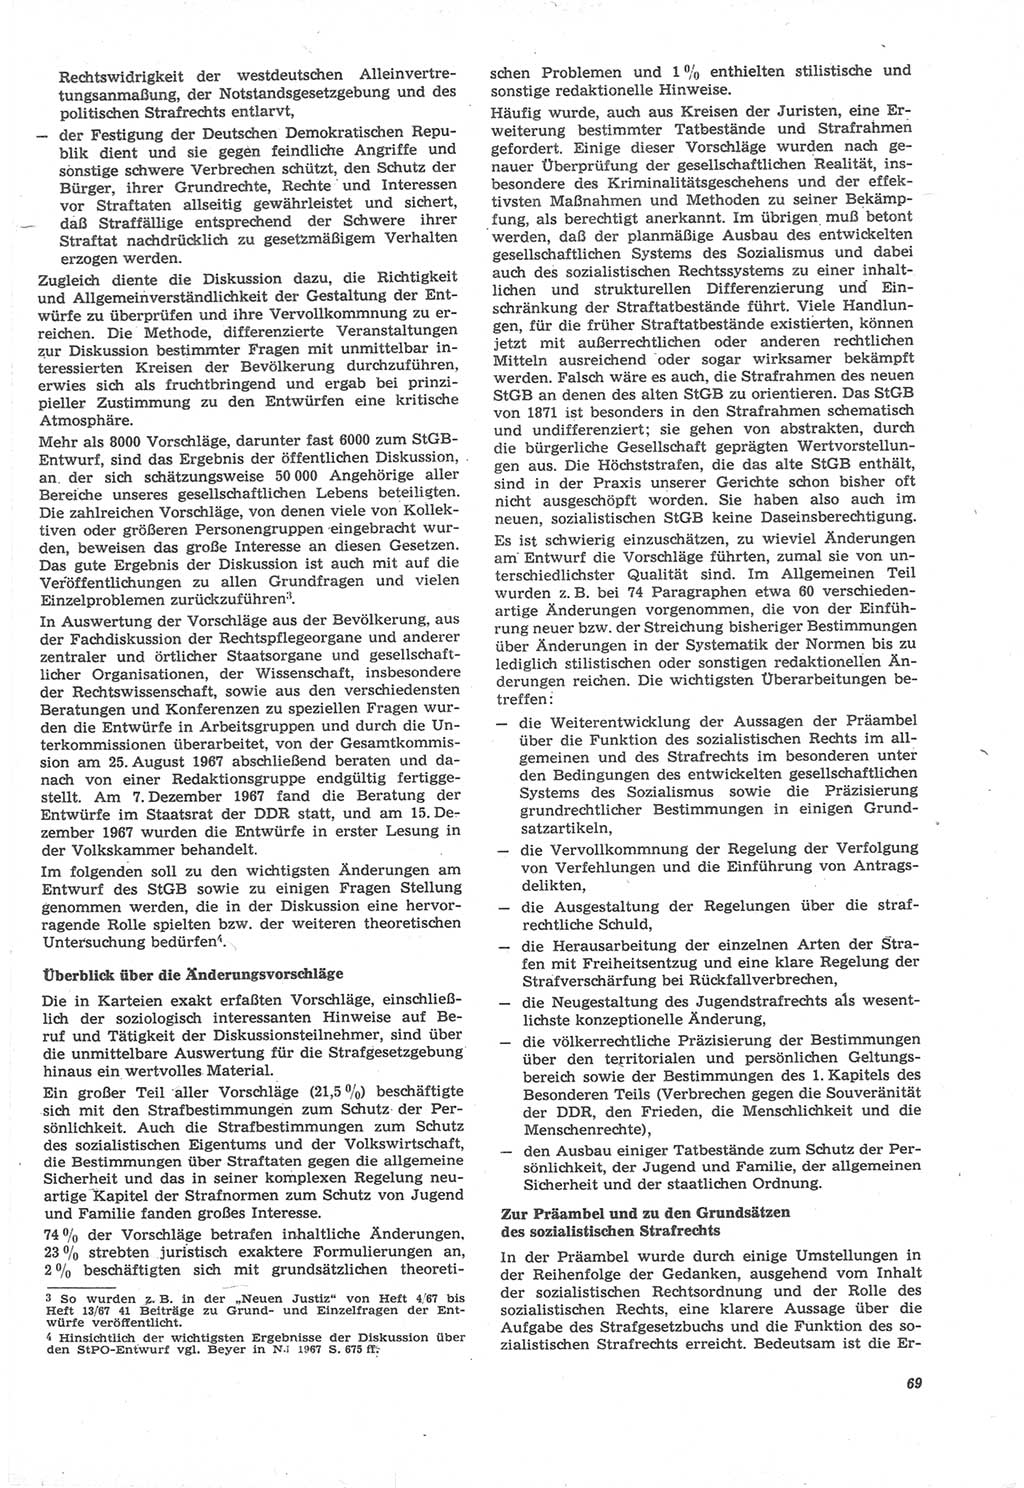 Neue Justiz (NJ), Zeitschrift für Recht und Rechtswissenschaft [Deutsche Demokratische Republik (DDR)], 22. Jahrgang 1968, Seite 69 (NJ DDR 1968, S. 69)